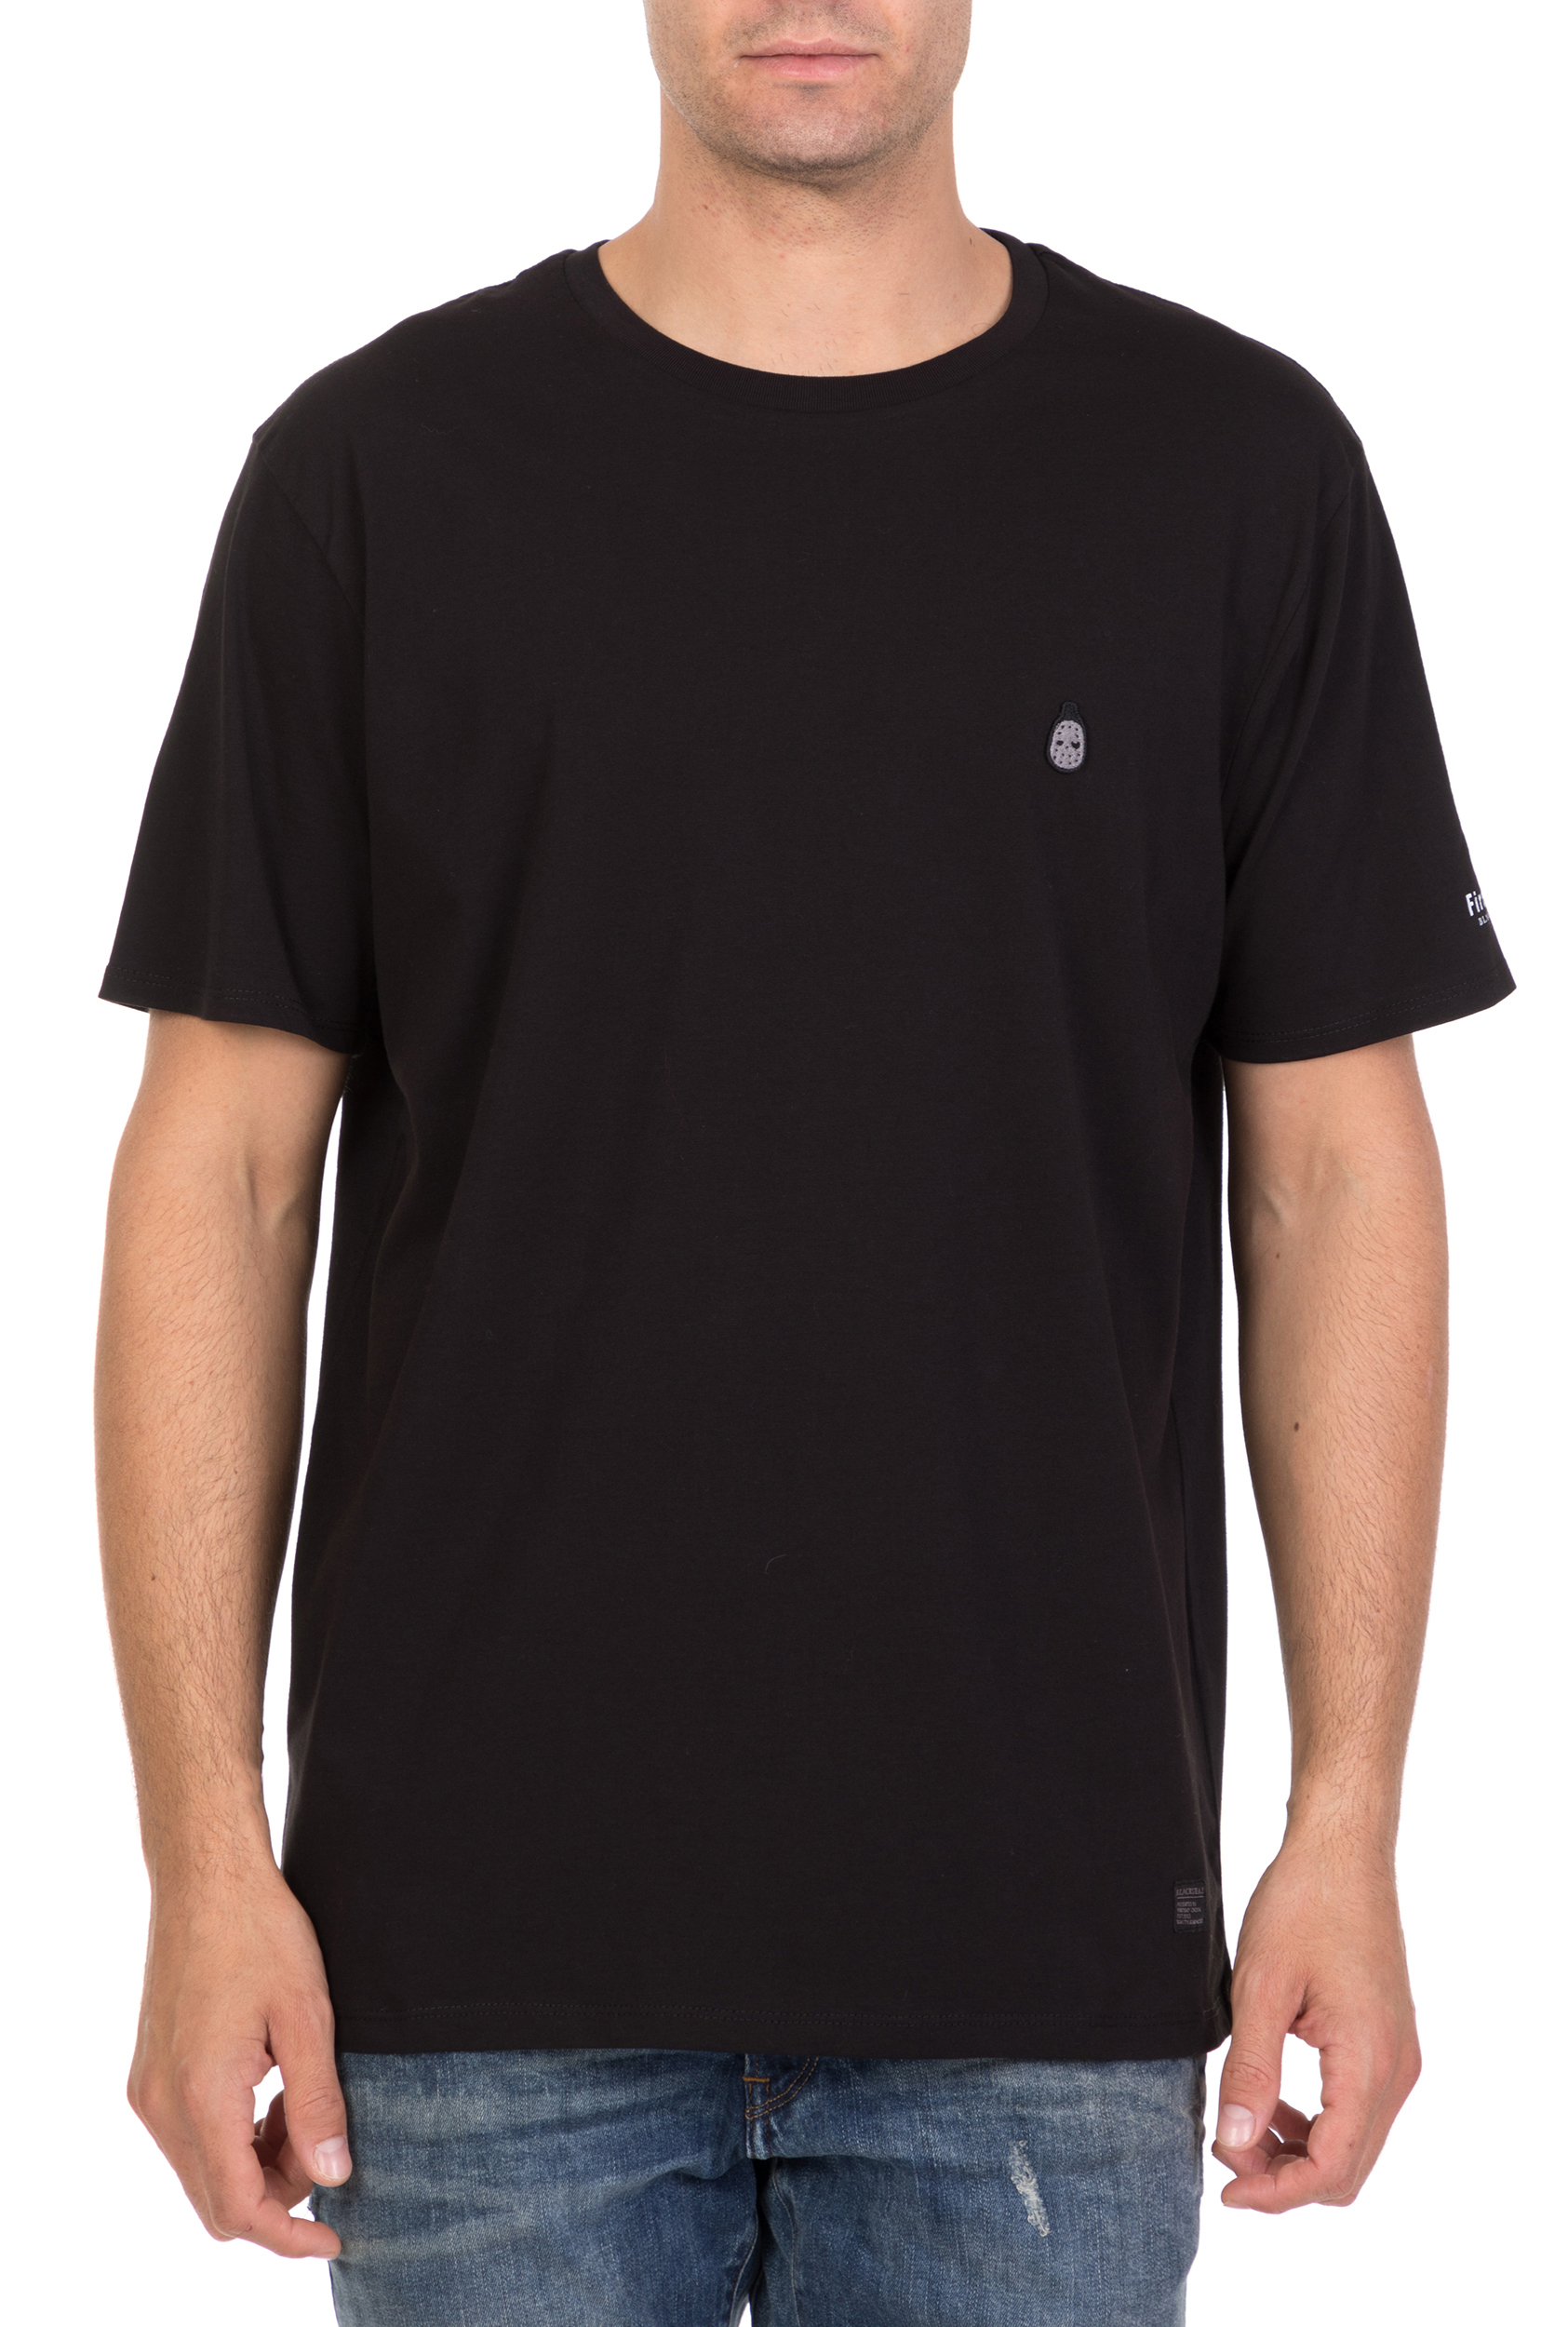 Ανδρικά/Ρούχα/Μπλούζες/Κοντομάνικες FIRETRAP - Ανδρική κοντομάνικη μπλούζα GNOME CREW μαύρη